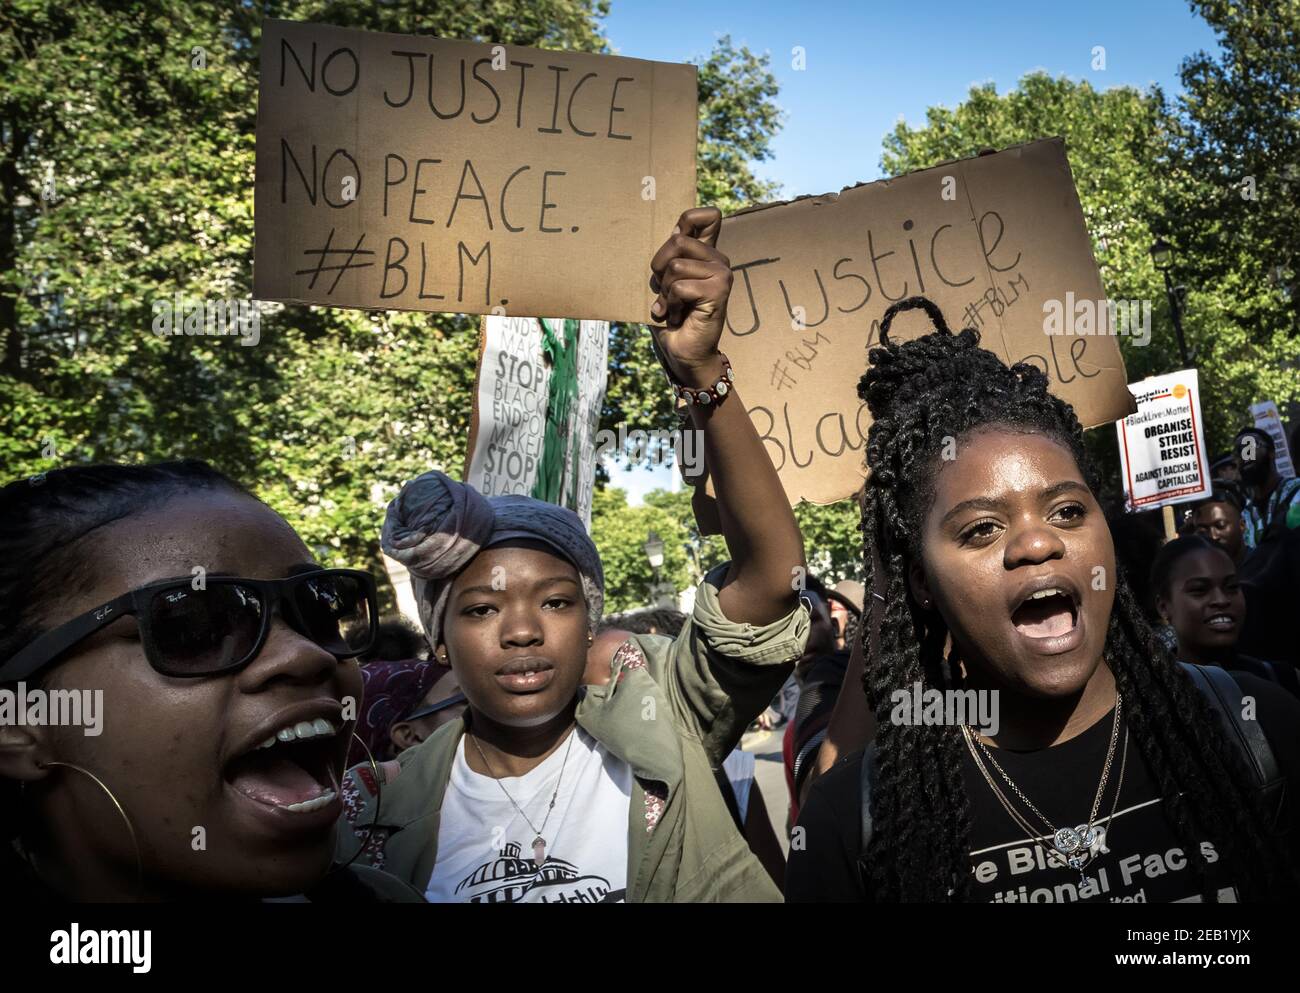 Les manifestants de Black Lives Matter traversent Westminster vers Downing Street lors d'une journée nationale d'action à travers le pays. Londres, Royaume-Uni. Banque D'Images